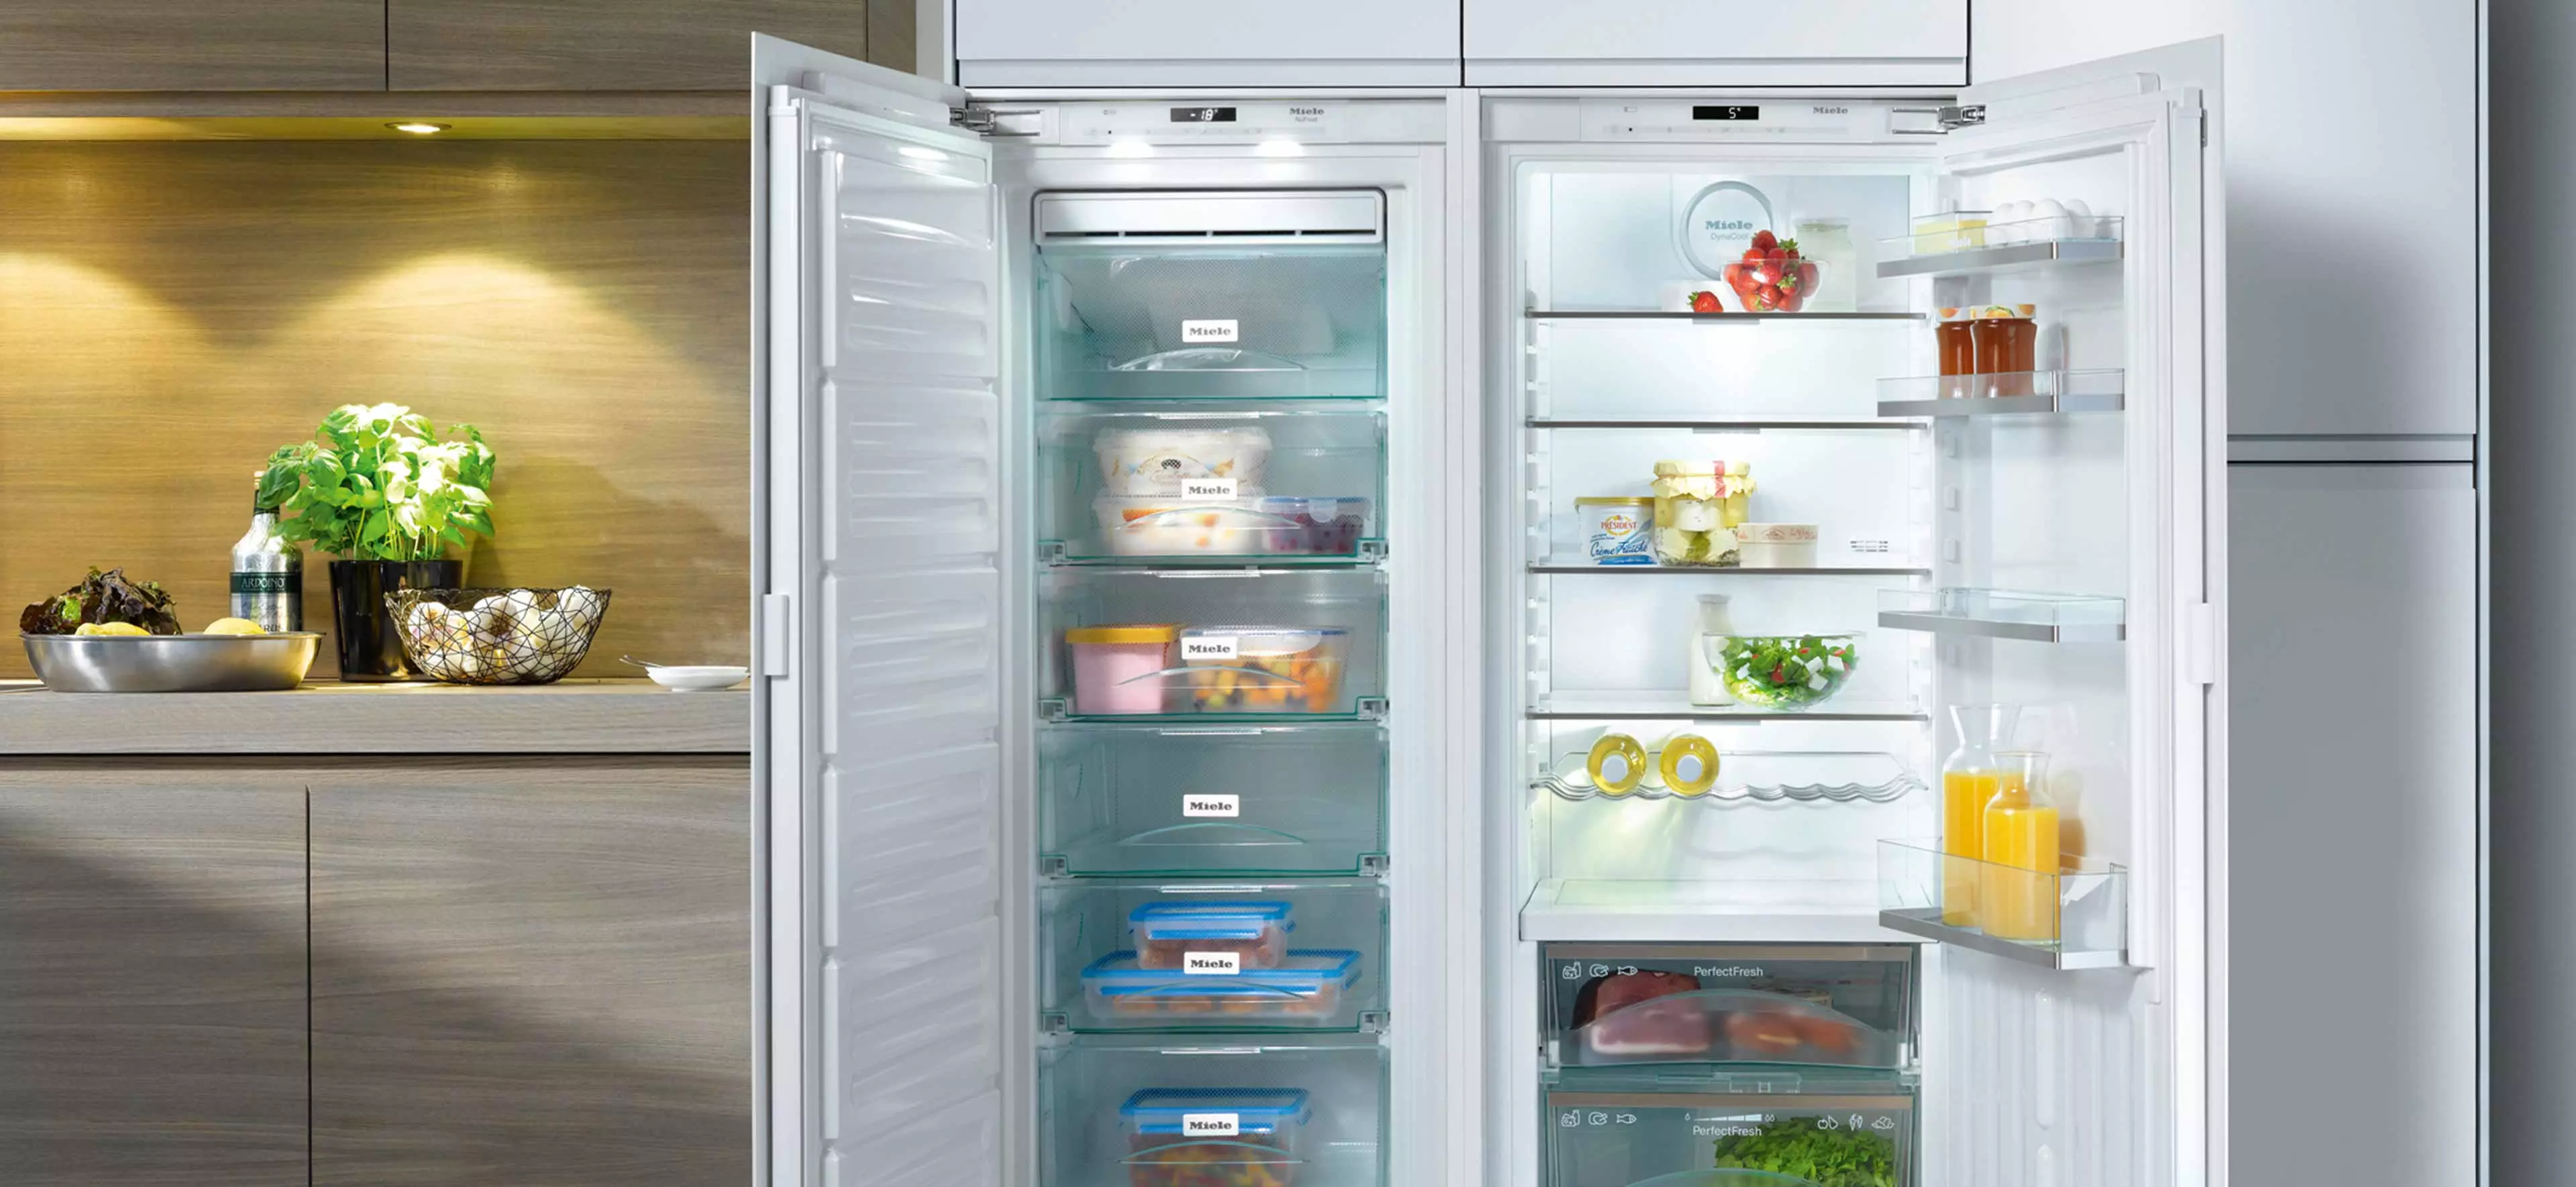 Kühlschrank: Einrichtungstipps und Gestaltungsideen!